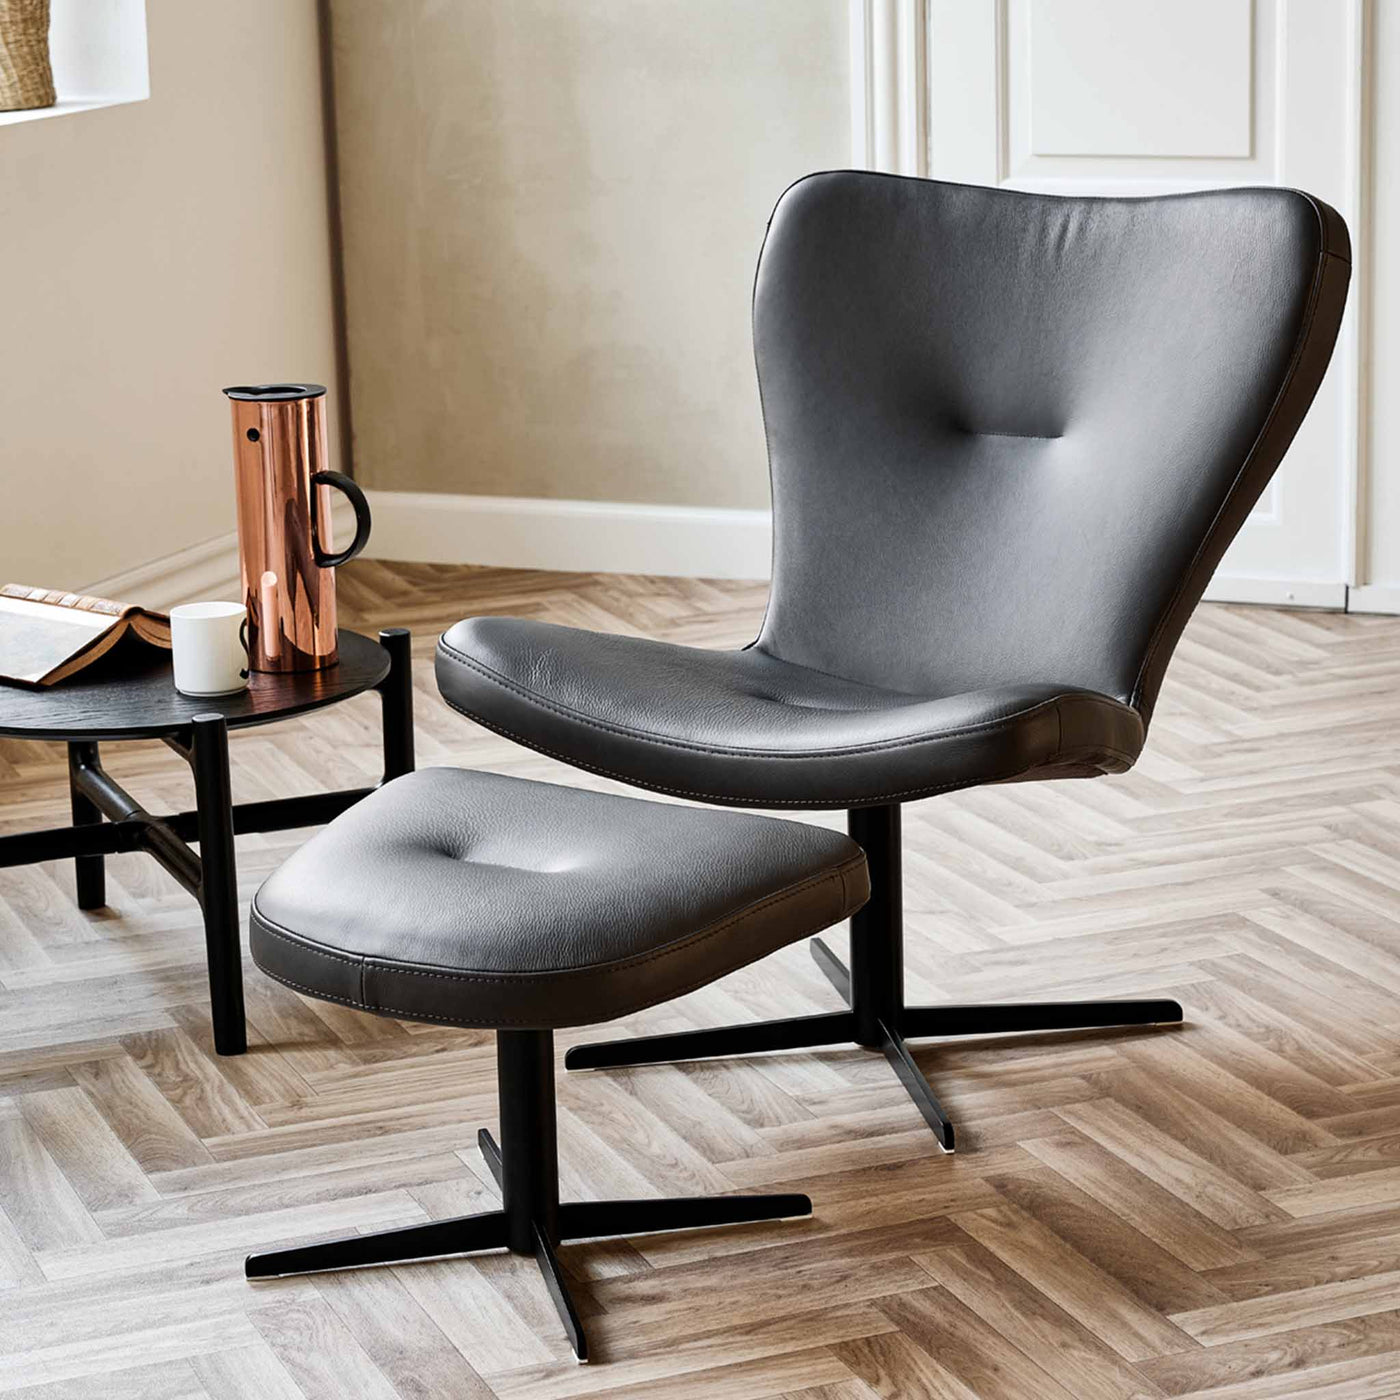 Tulip lænestol med skammel fra Top-Line i sort Viborg læder.